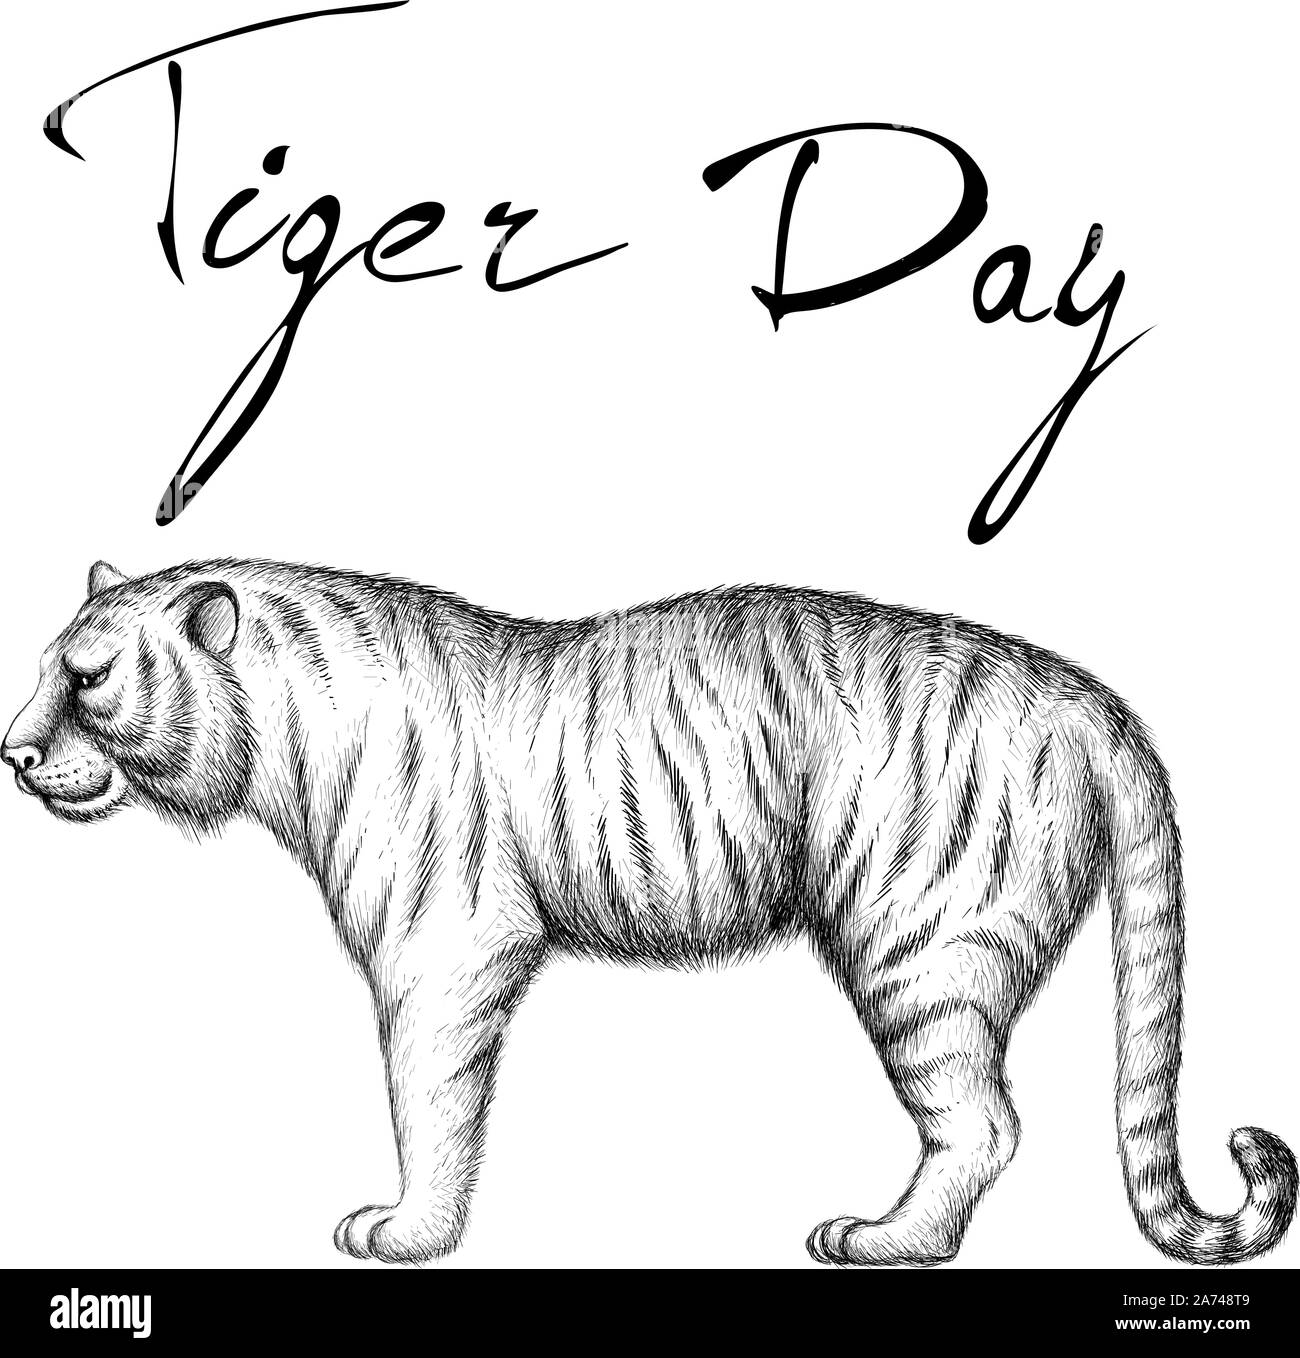 Le logo Vector tiger pour tatouage ou T-shirts ou d'extérieur. Style de chasse tigers imprimer sur fond noir. Ce dessin est pour un tissu noir ou ca Illustration de Vecteur